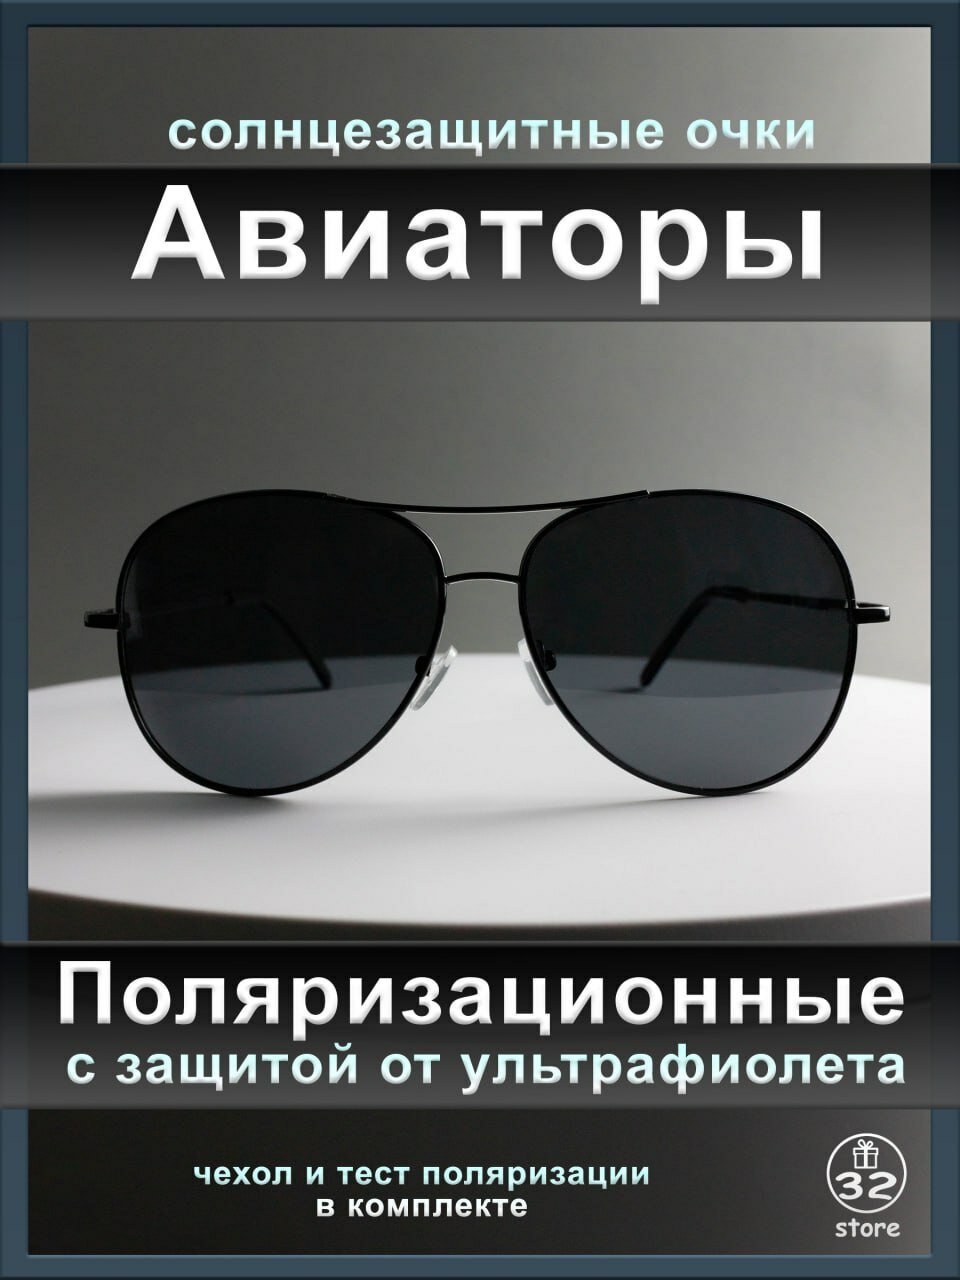 Солнцезащитные очки  Очки черные Авиаторы